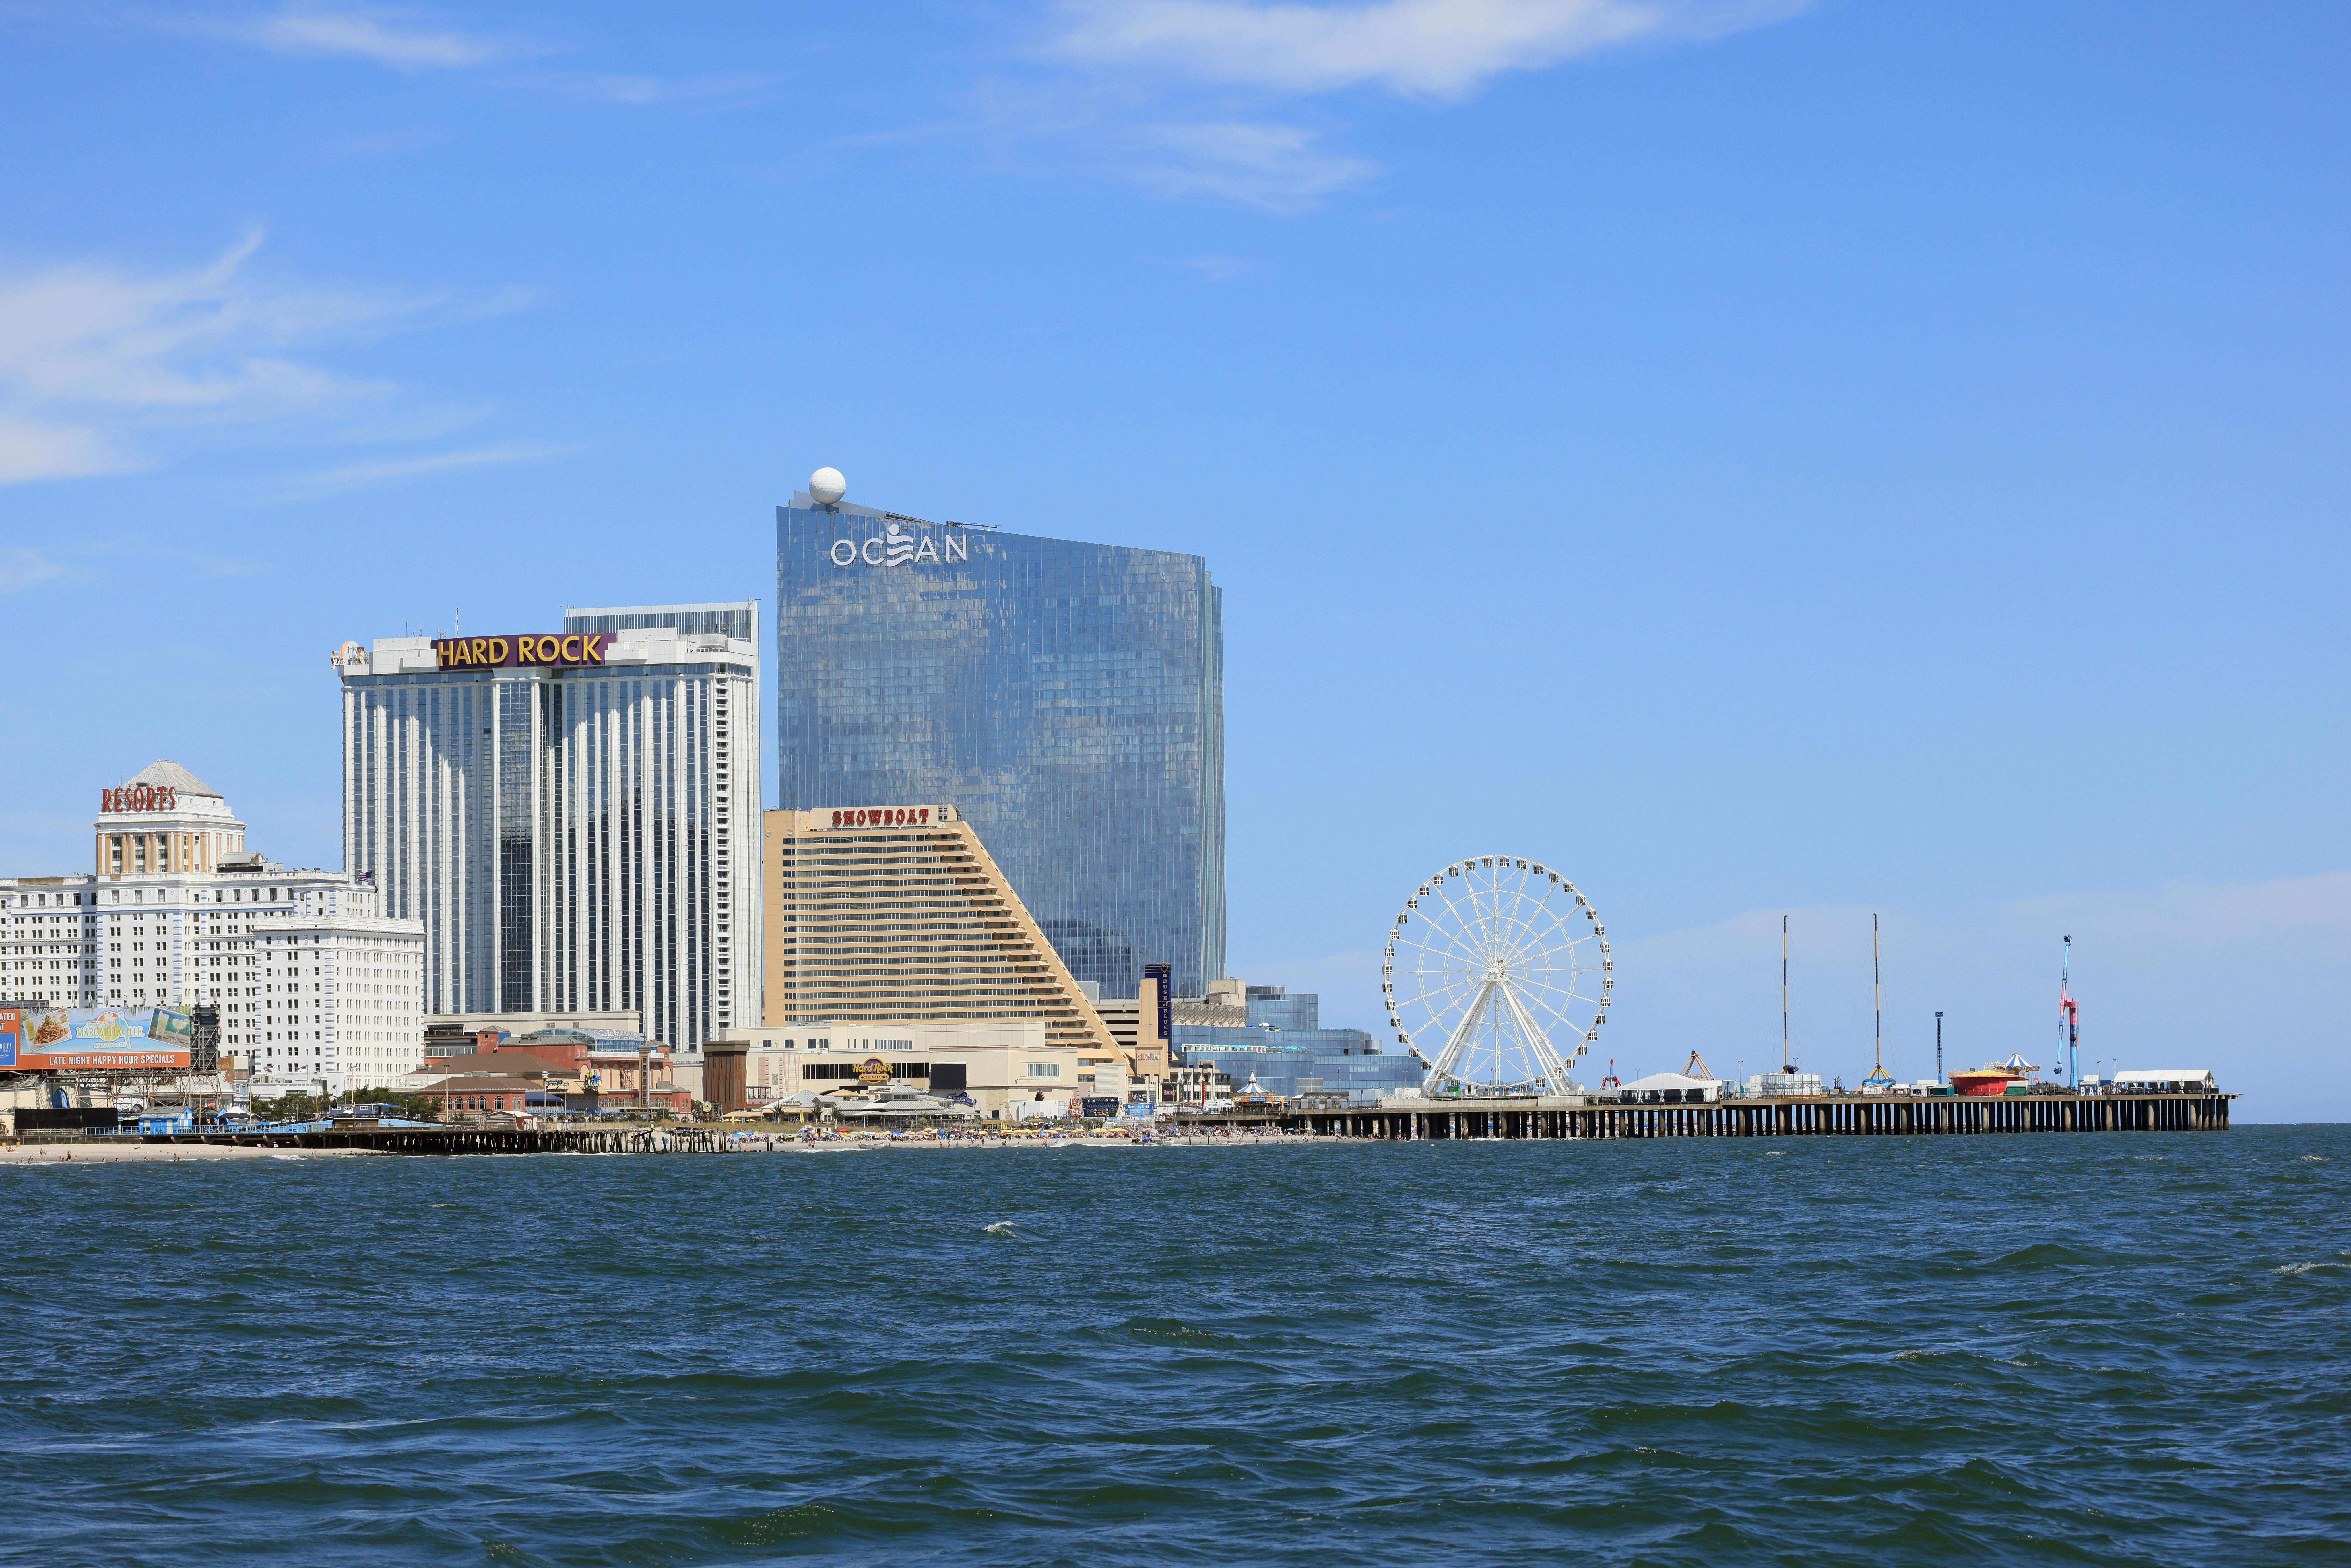 Some Atlantic City casinos still struggling as NJ betting nears